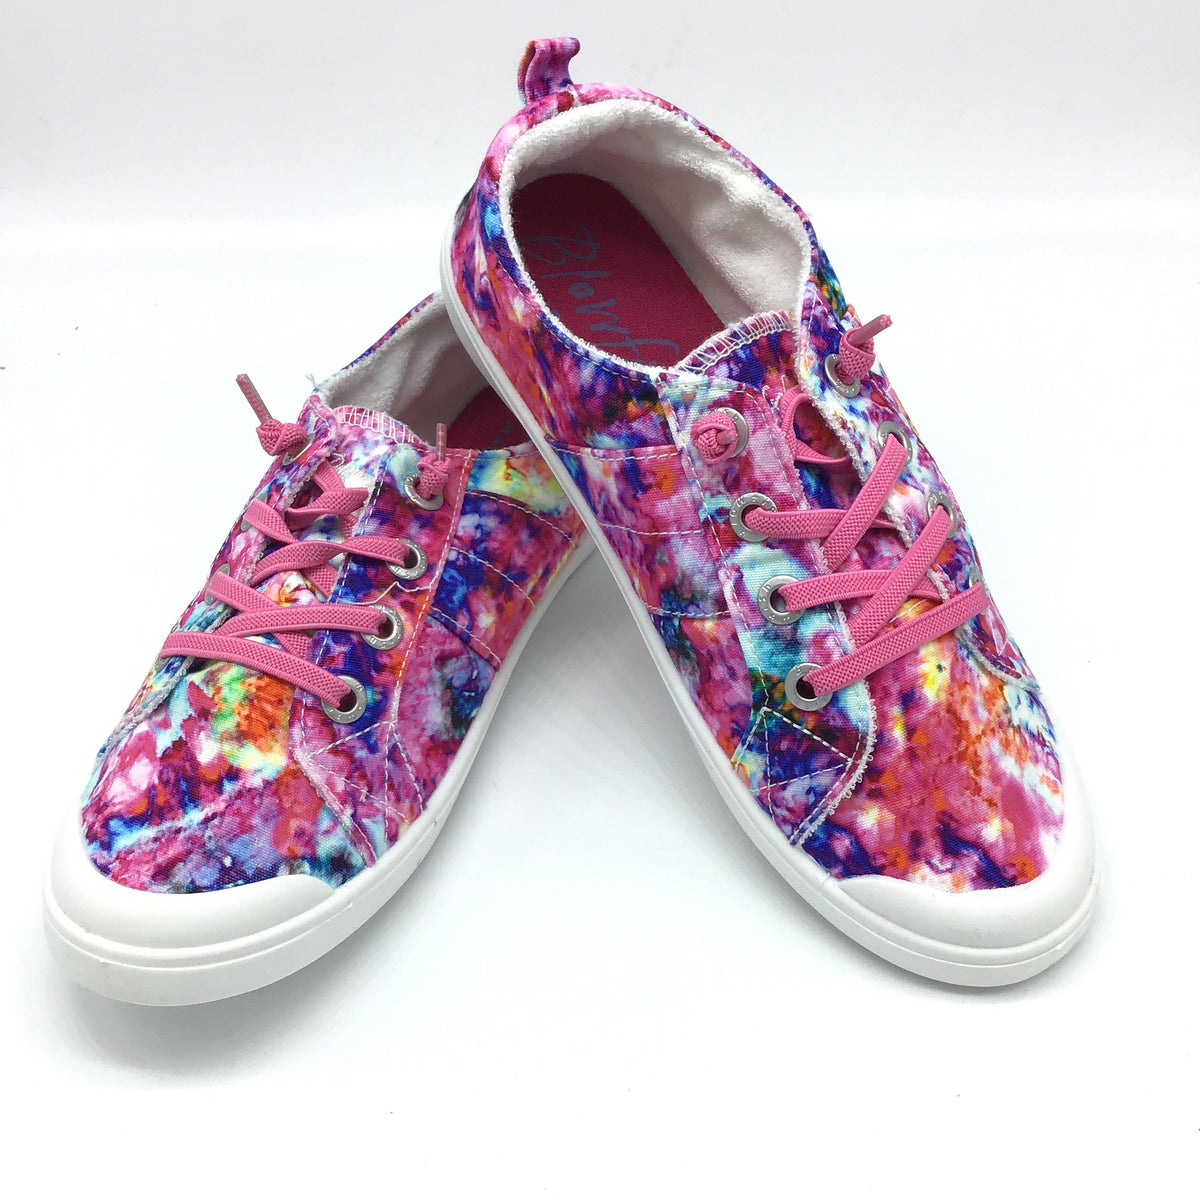 Blowfish Slip On "Vegas Baby" Sneaker (Hot Pink Milkway) Kid Sizes 13 - 5